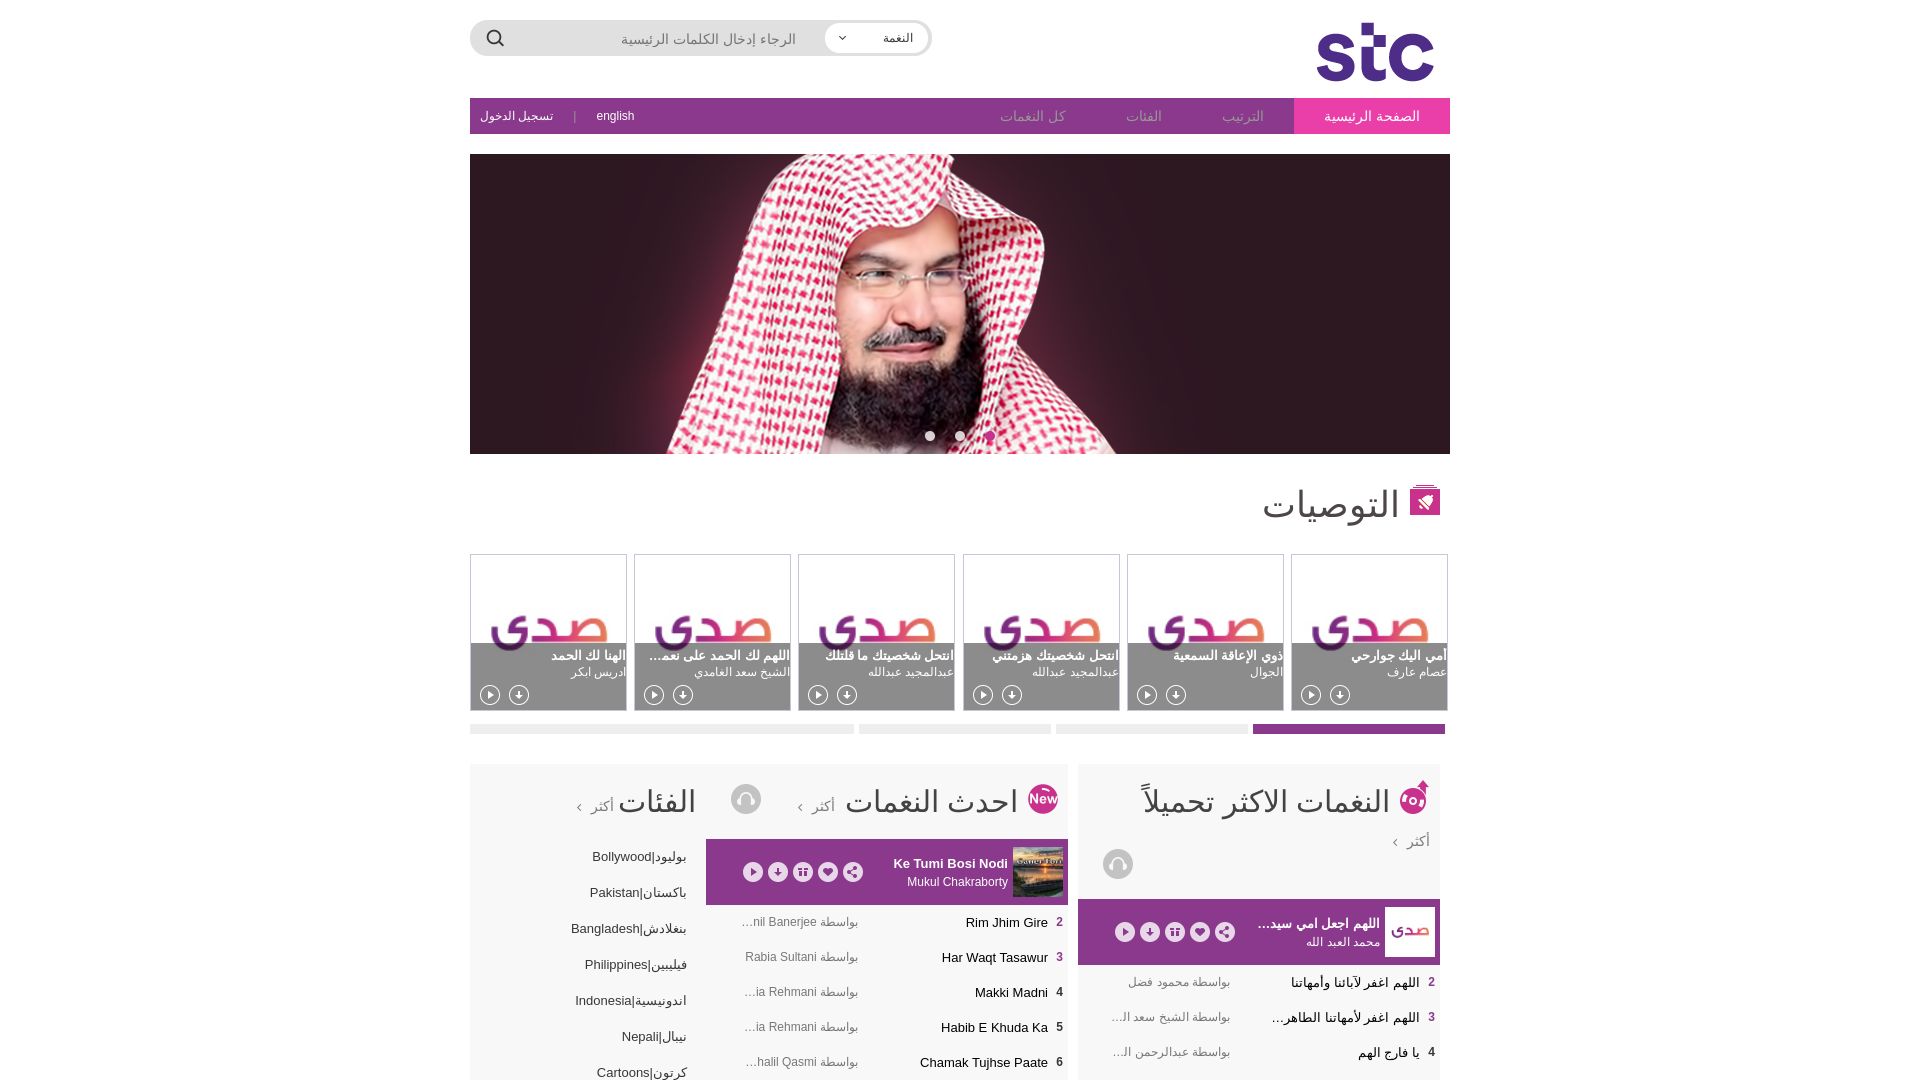 Website status sada.net.sa is   ONLINE